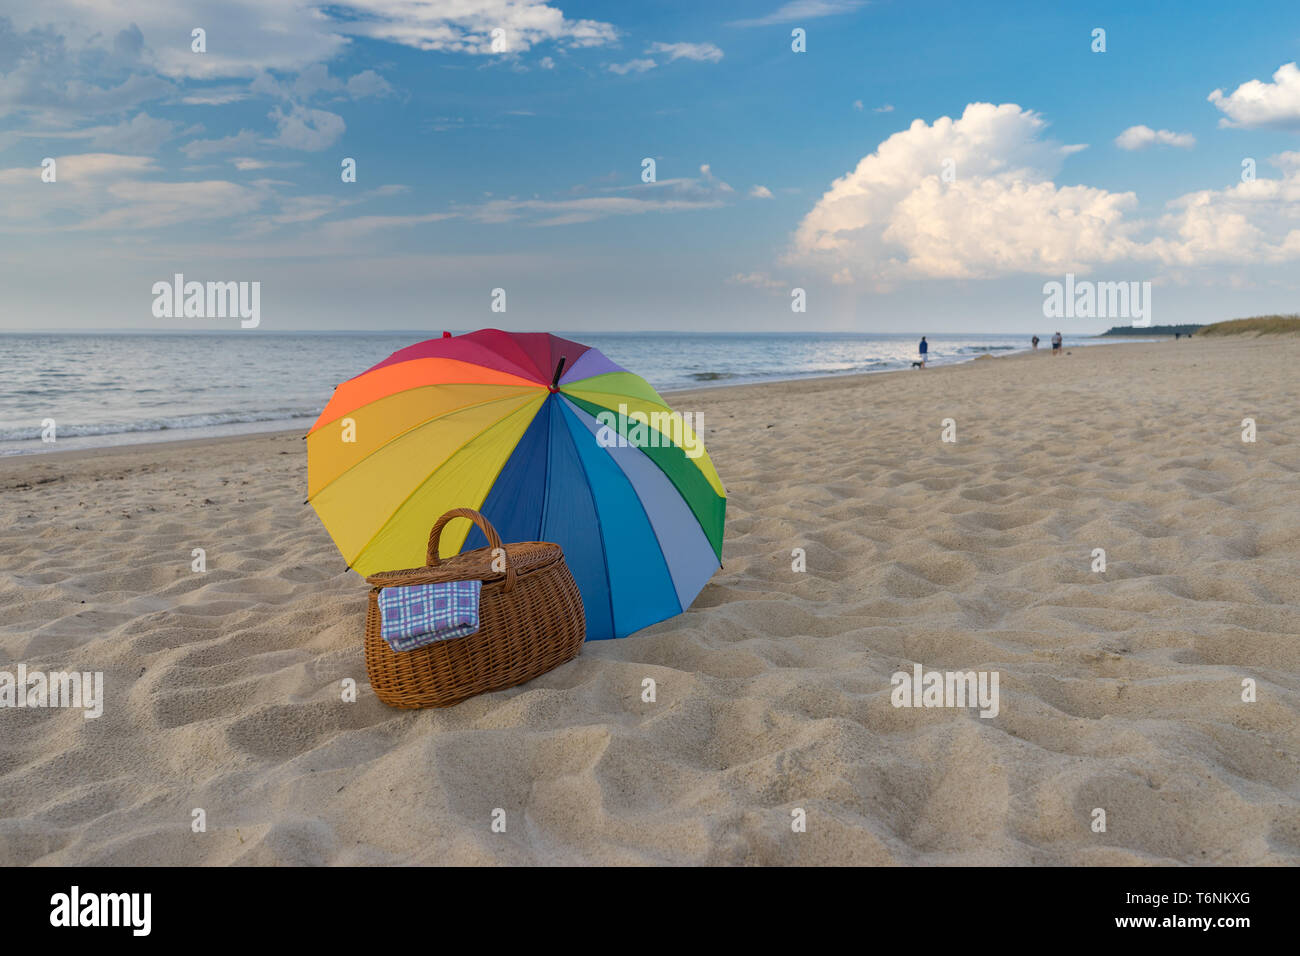 Paraguas multicolores y cesta de picnic contra scenic seacoast, escapada de fin de semana, concepto Foto de stock